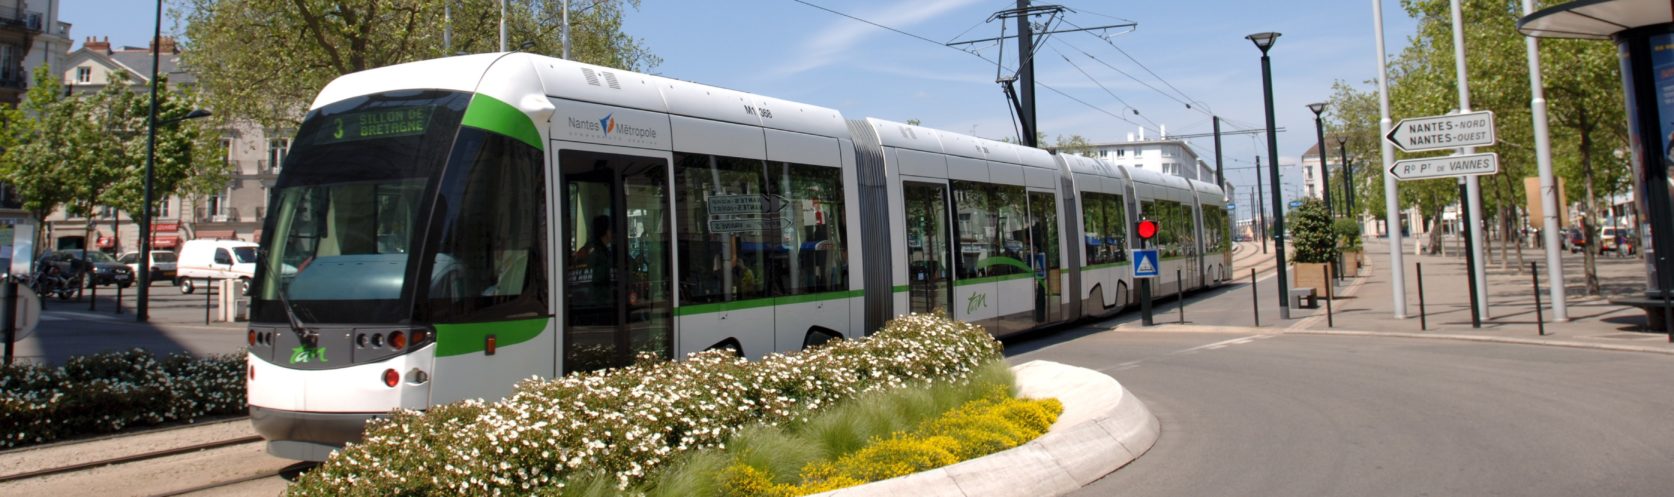 Tramway TAN vert blanc passant dans la ville de Nantes ciel bleu et drapeau français européen